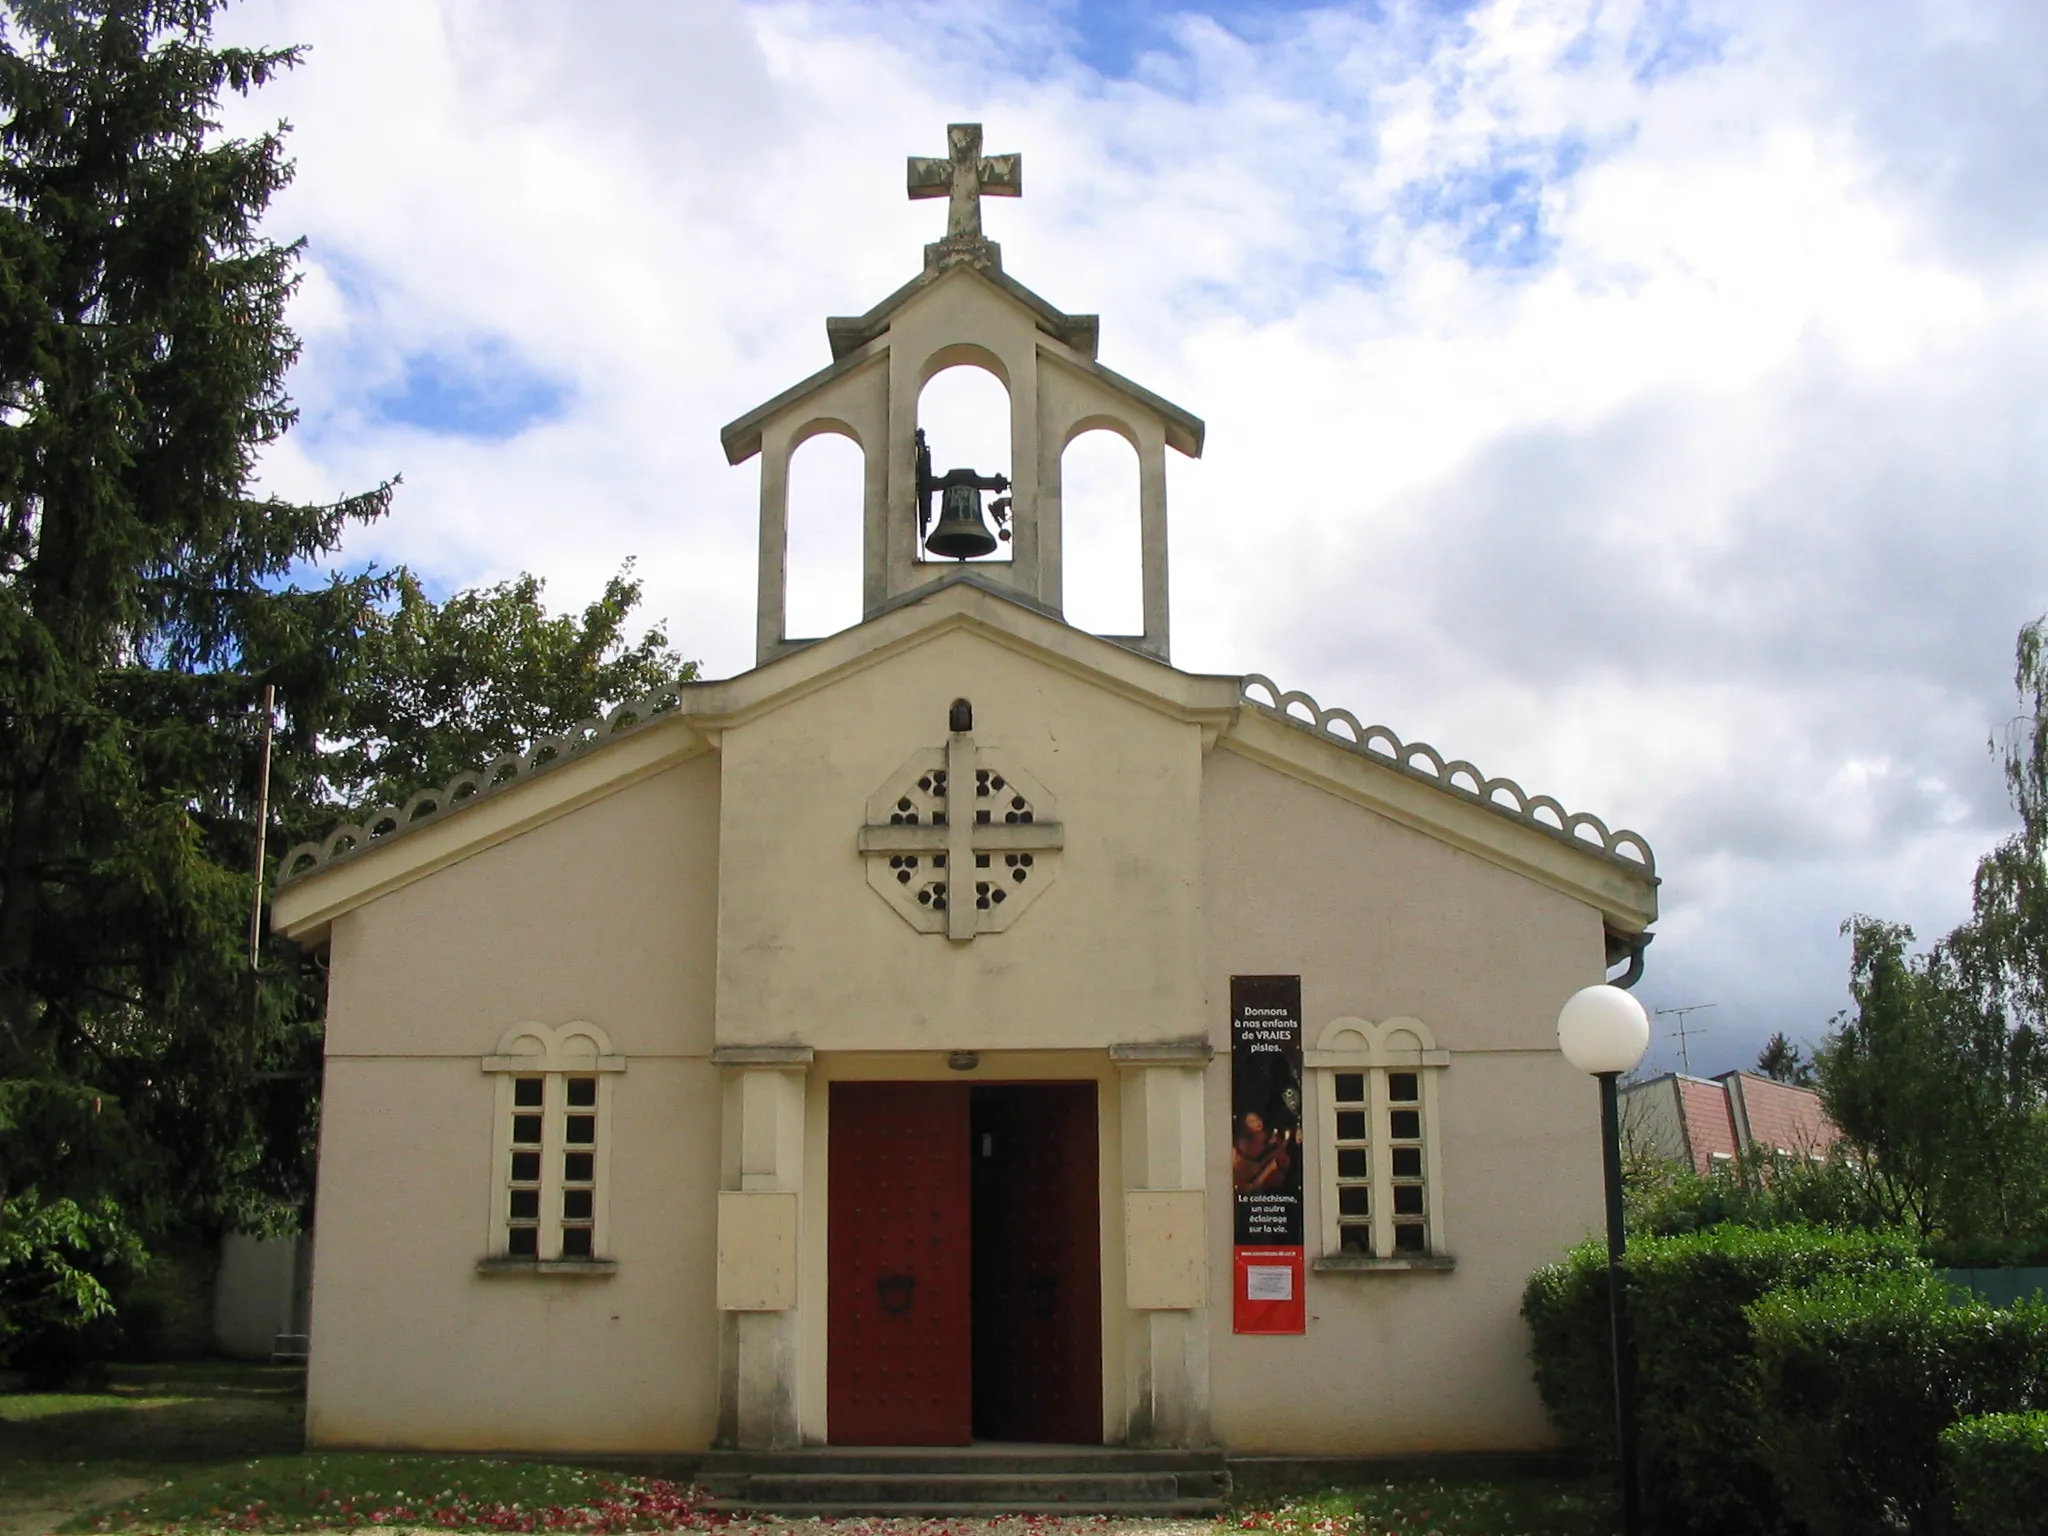 Photo showing: La nouvelle église de Cesson(Seine-et-Marne). New church of Cesson (Seine-et-Marne).

Auteur/author:User:Tej